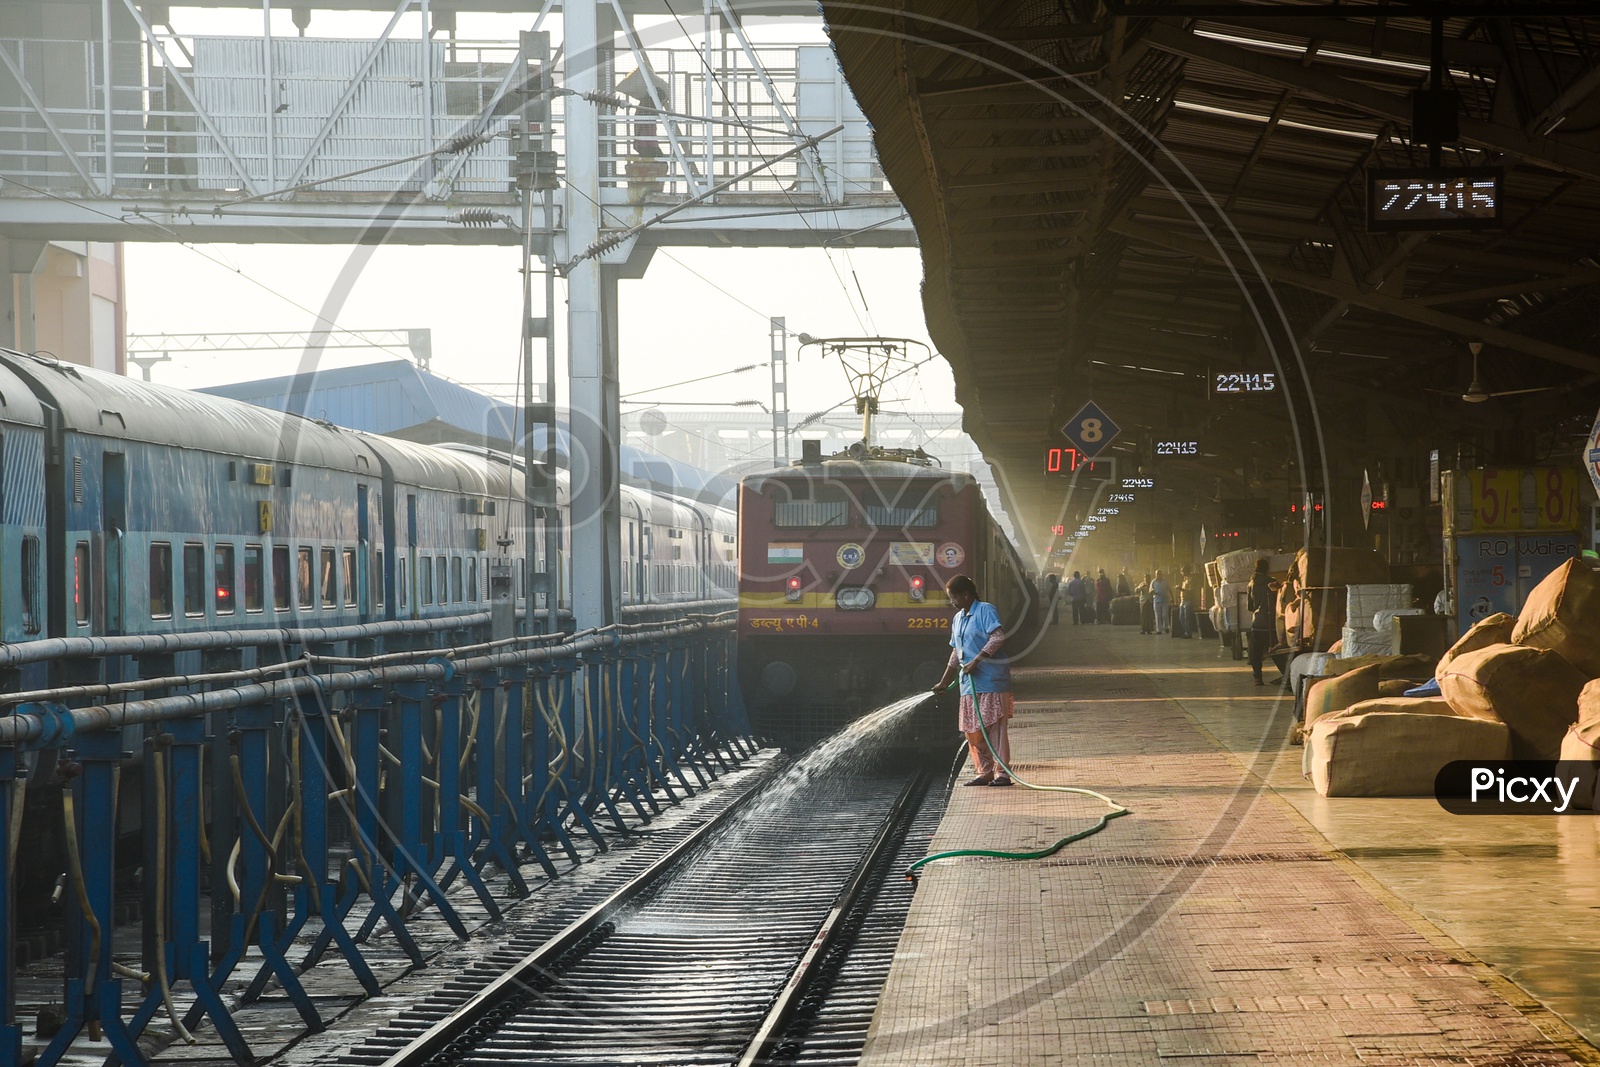 Railway Station Visakhapatnam